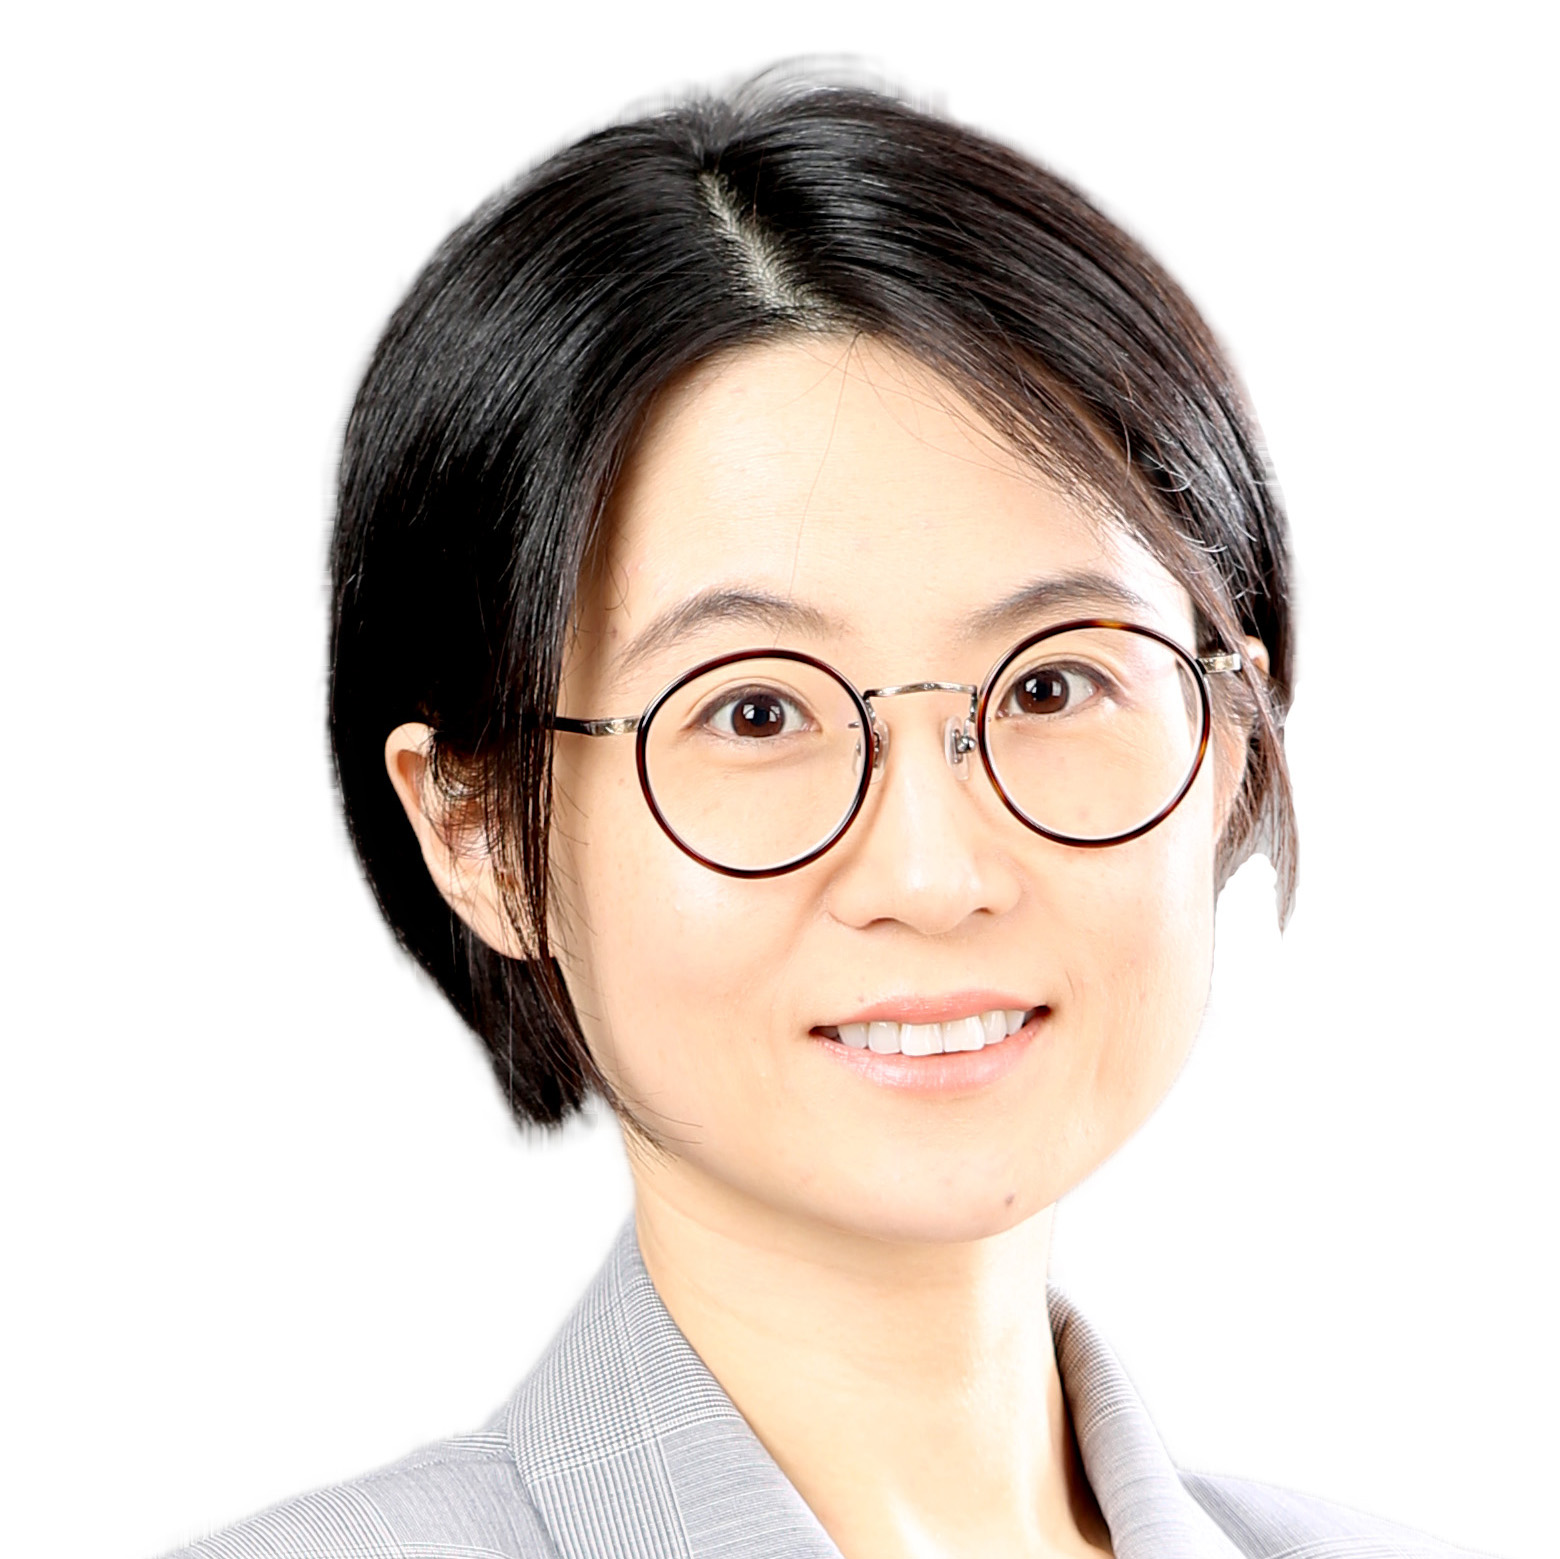 Dr. Frances Jin